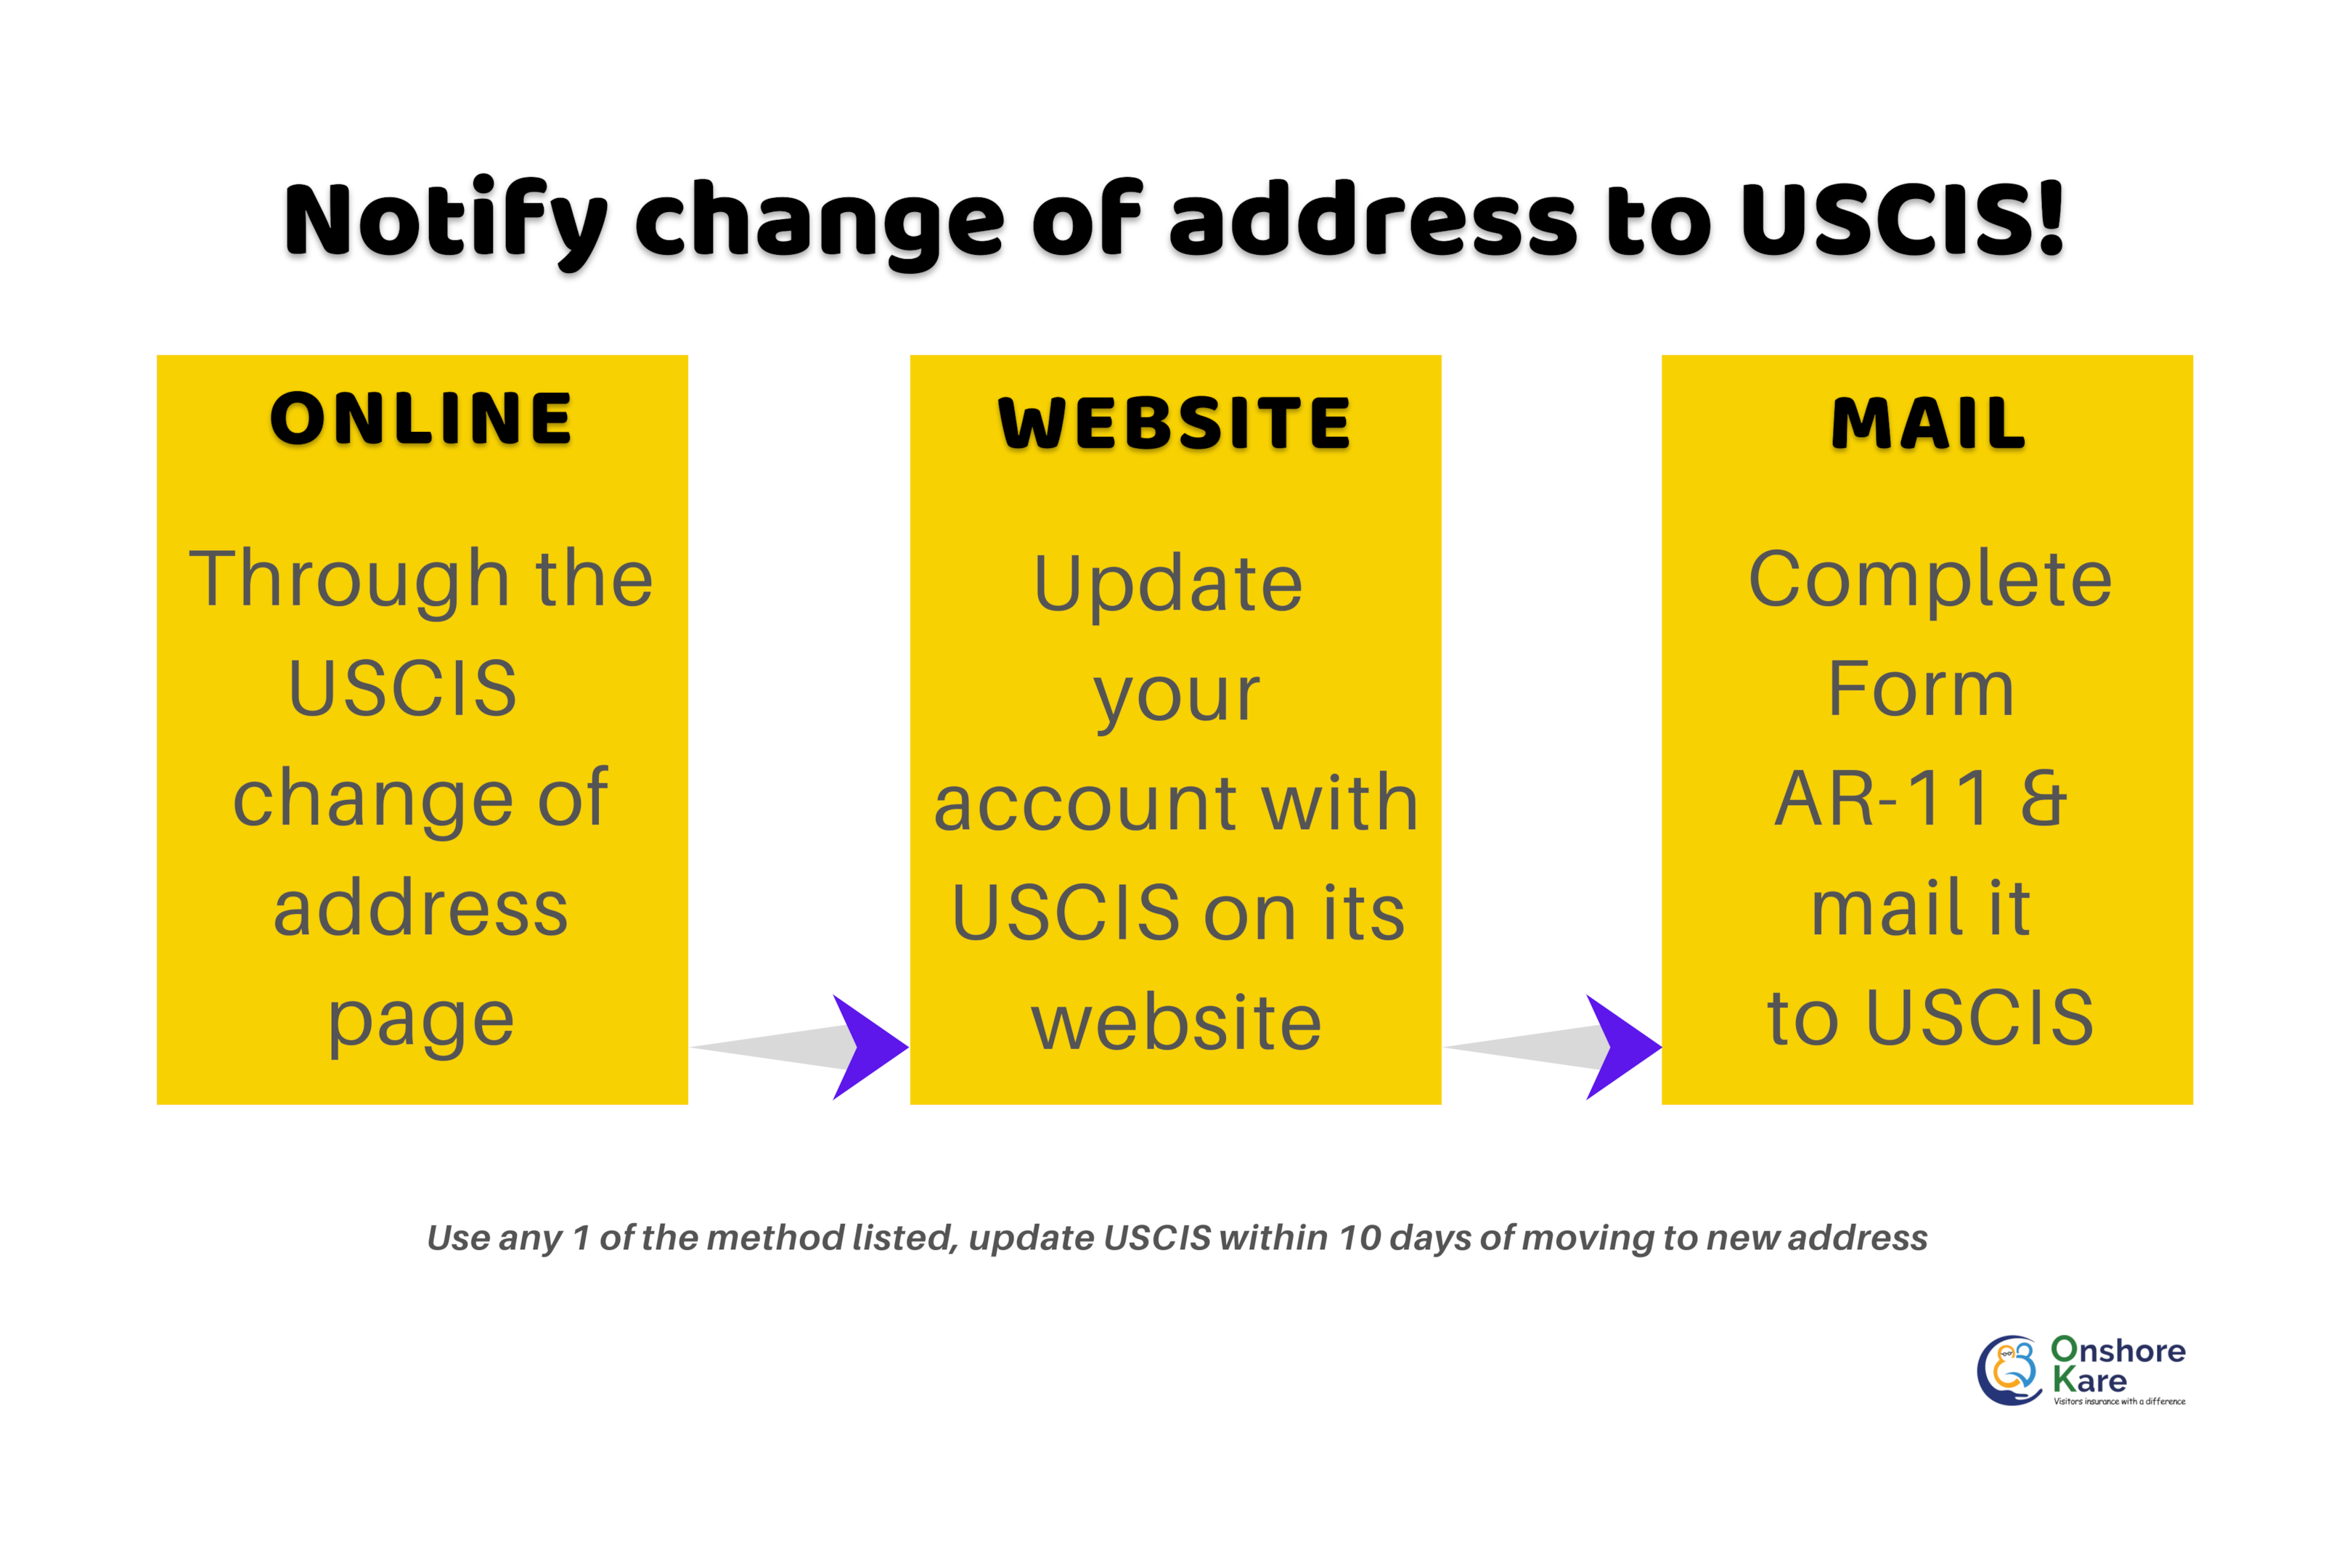 Three ways to notify USCIS on change of address